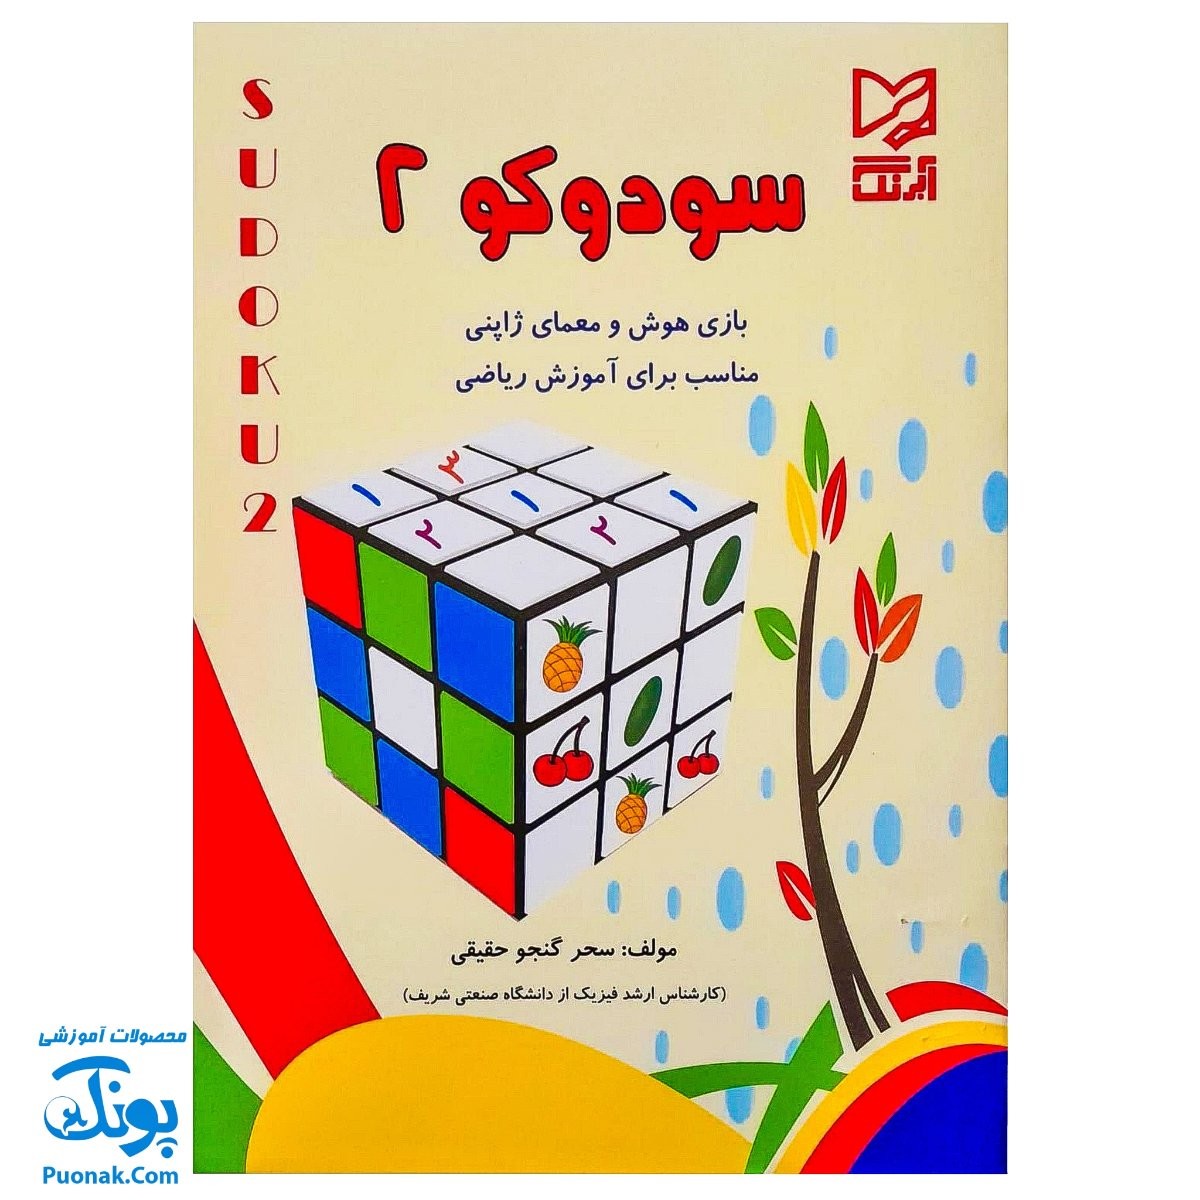 کتاب آموزشی سودوکو ۲ بازی هوش و معمای ژاپنی مناسب برای آموزش ریاضی